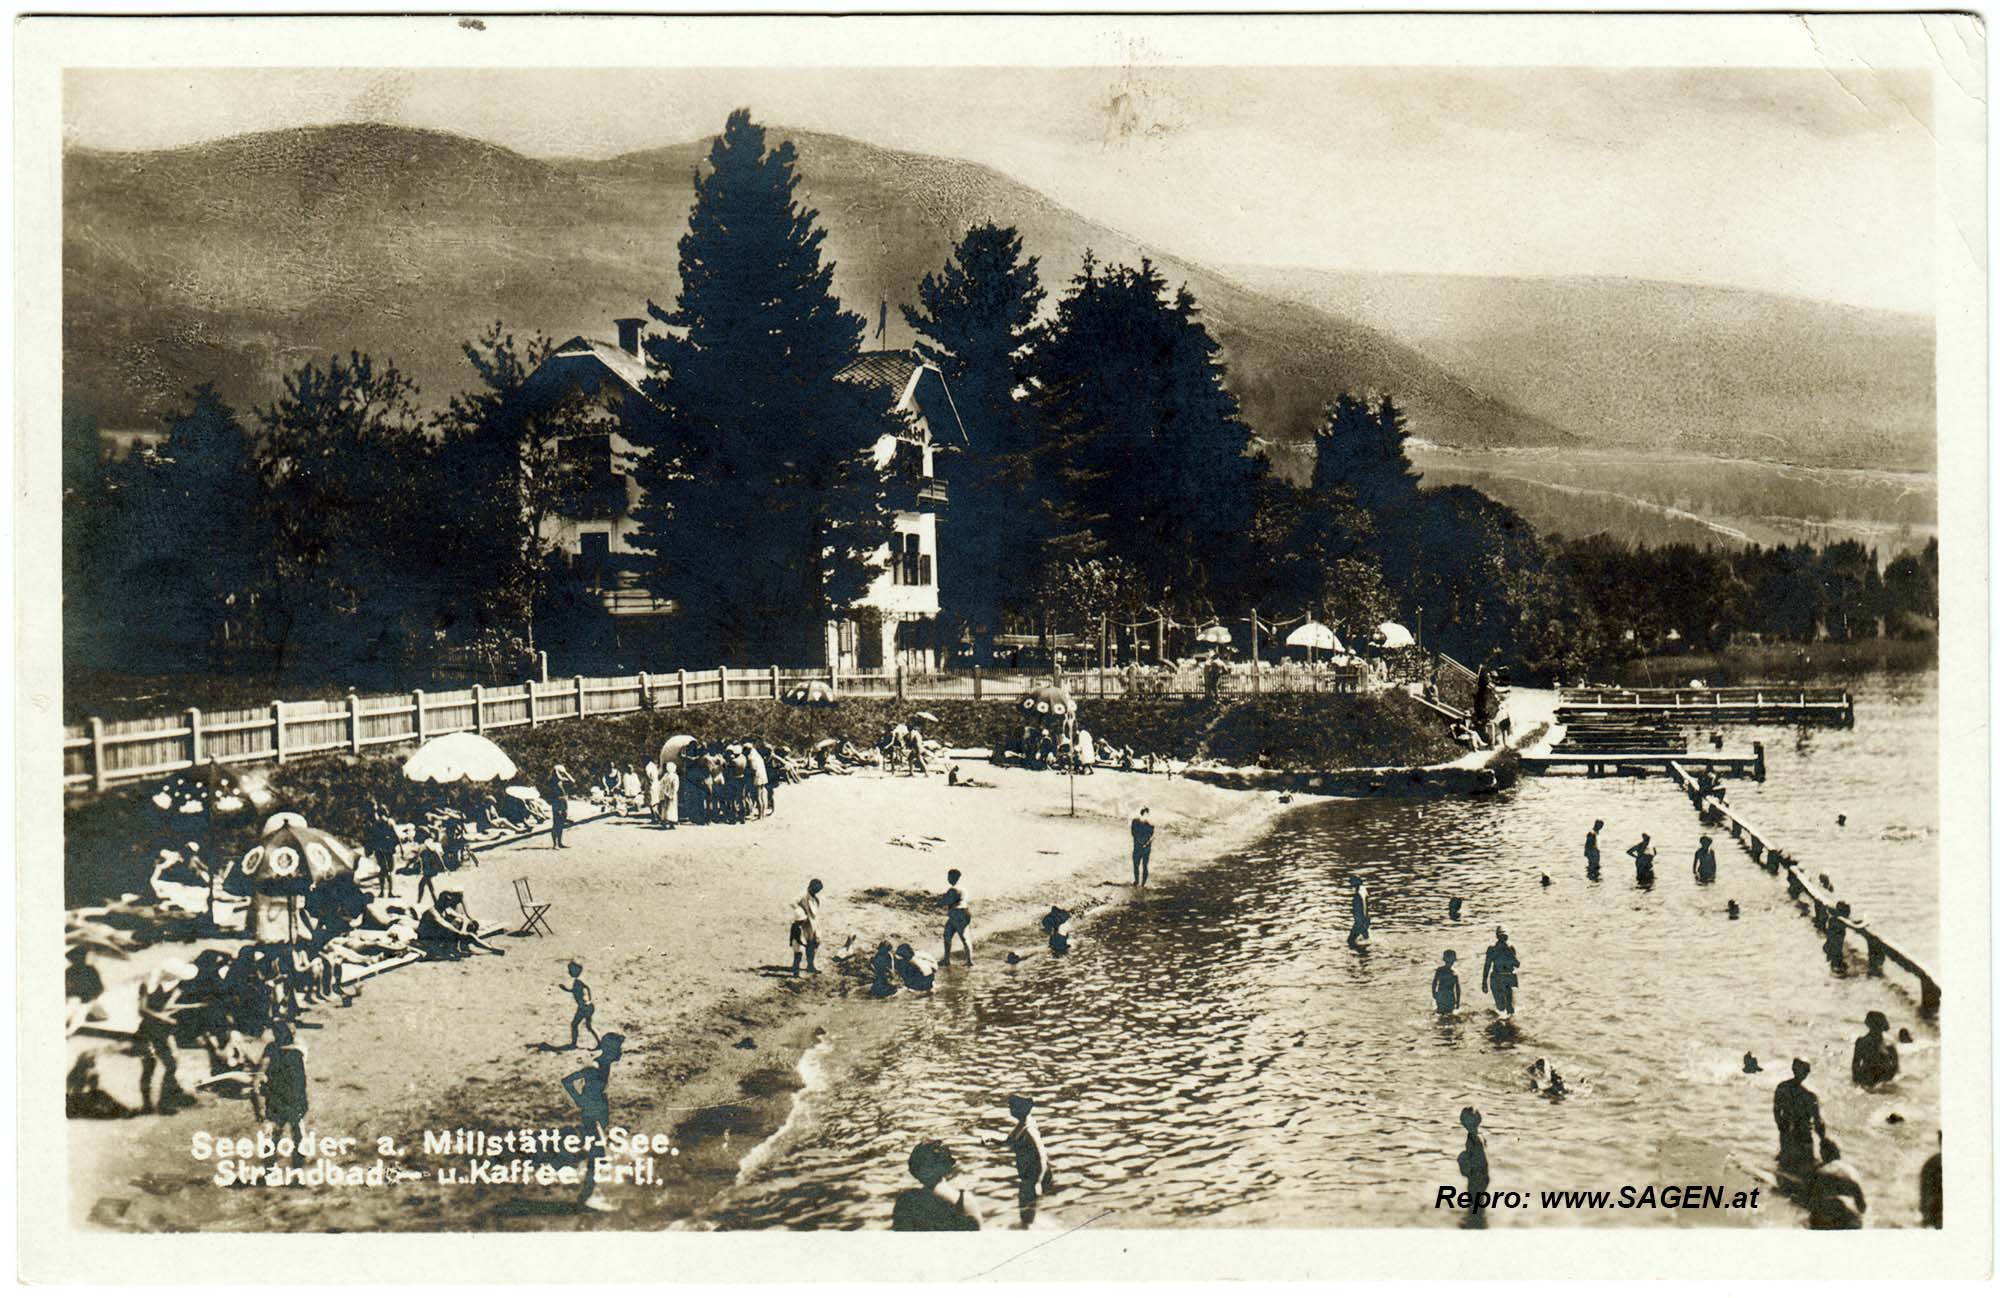 Seeboden am Millstätter See, Strandbad und Kaffee Ertl 1930